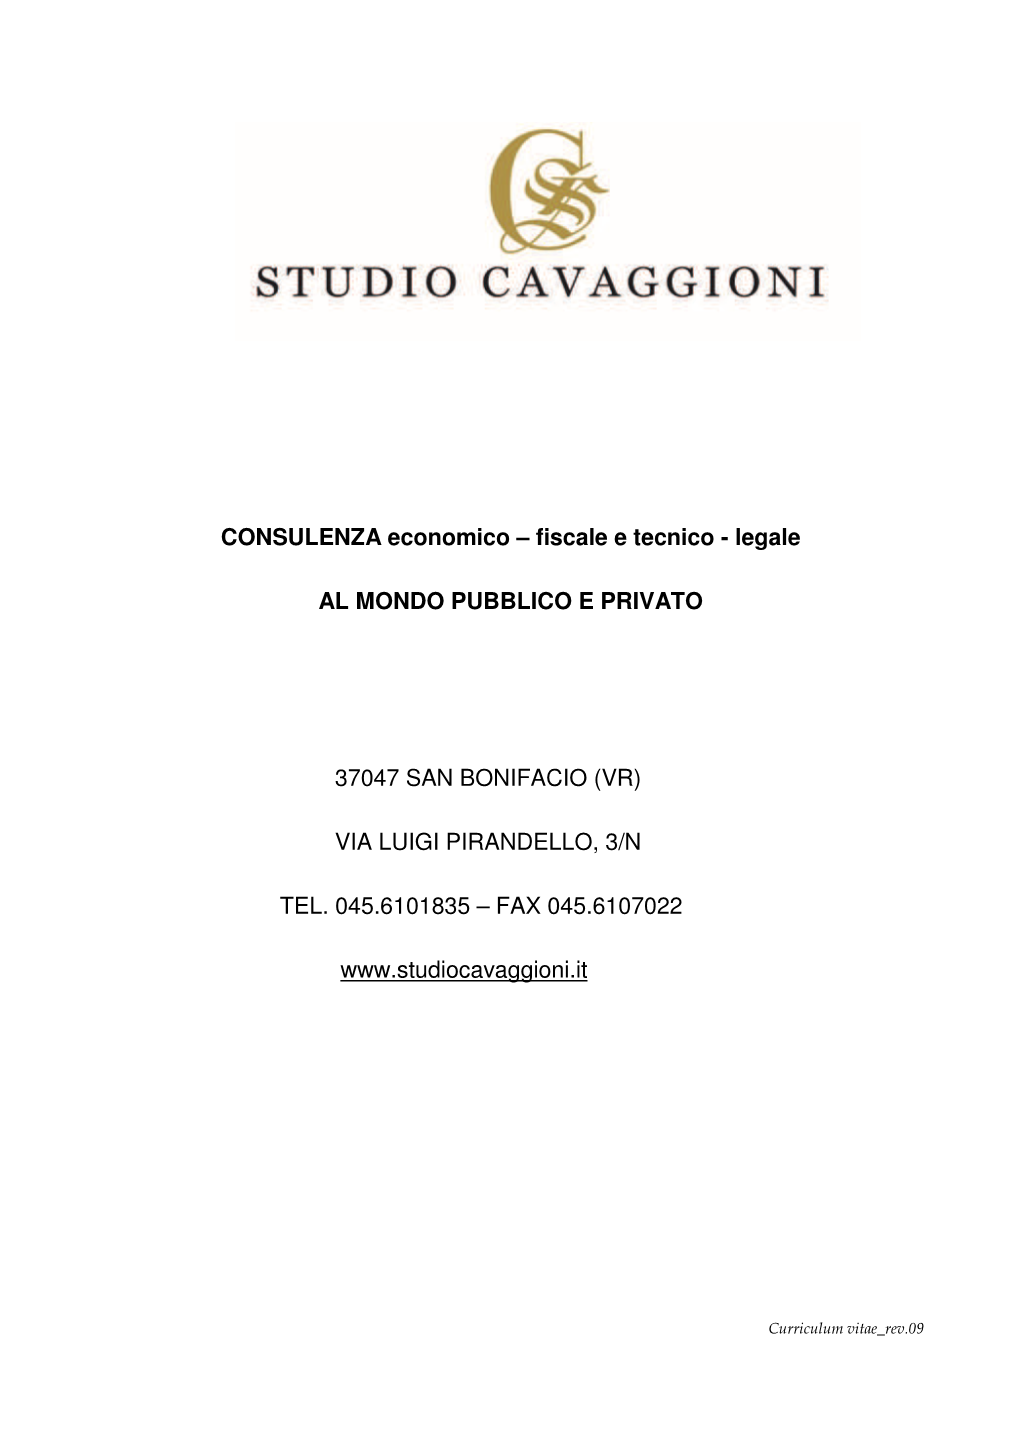 CURRICULUM VITAE STUDIO CAVAGGIONI Scarl